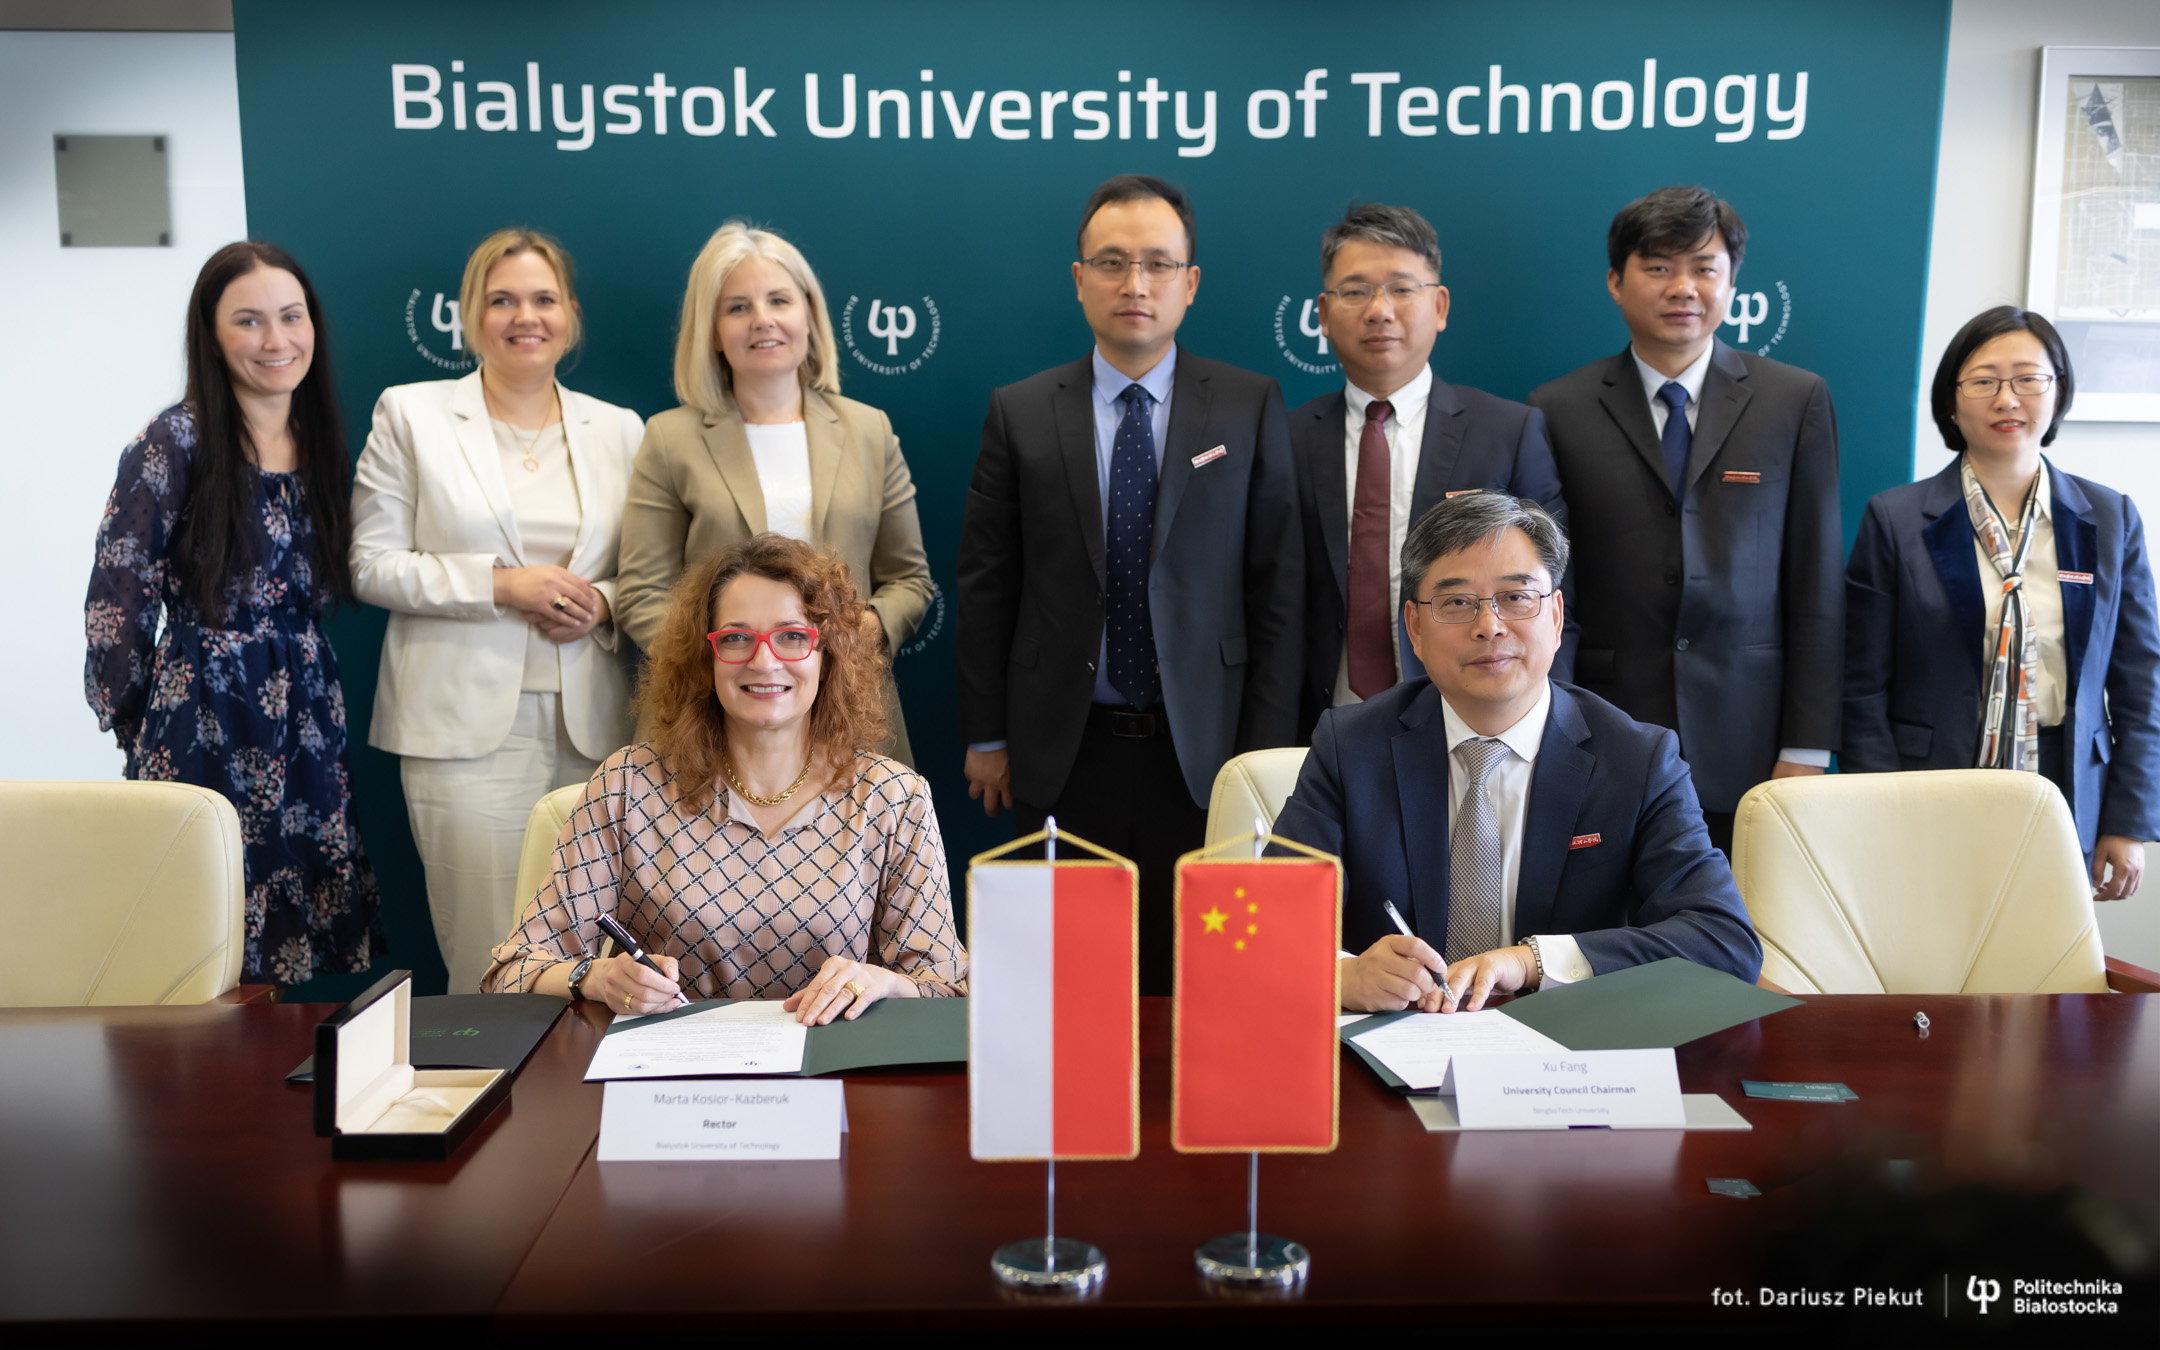 Podpisanie umowy z uczelnia NingboTech z Chin, fot. Politechnika Białostocka